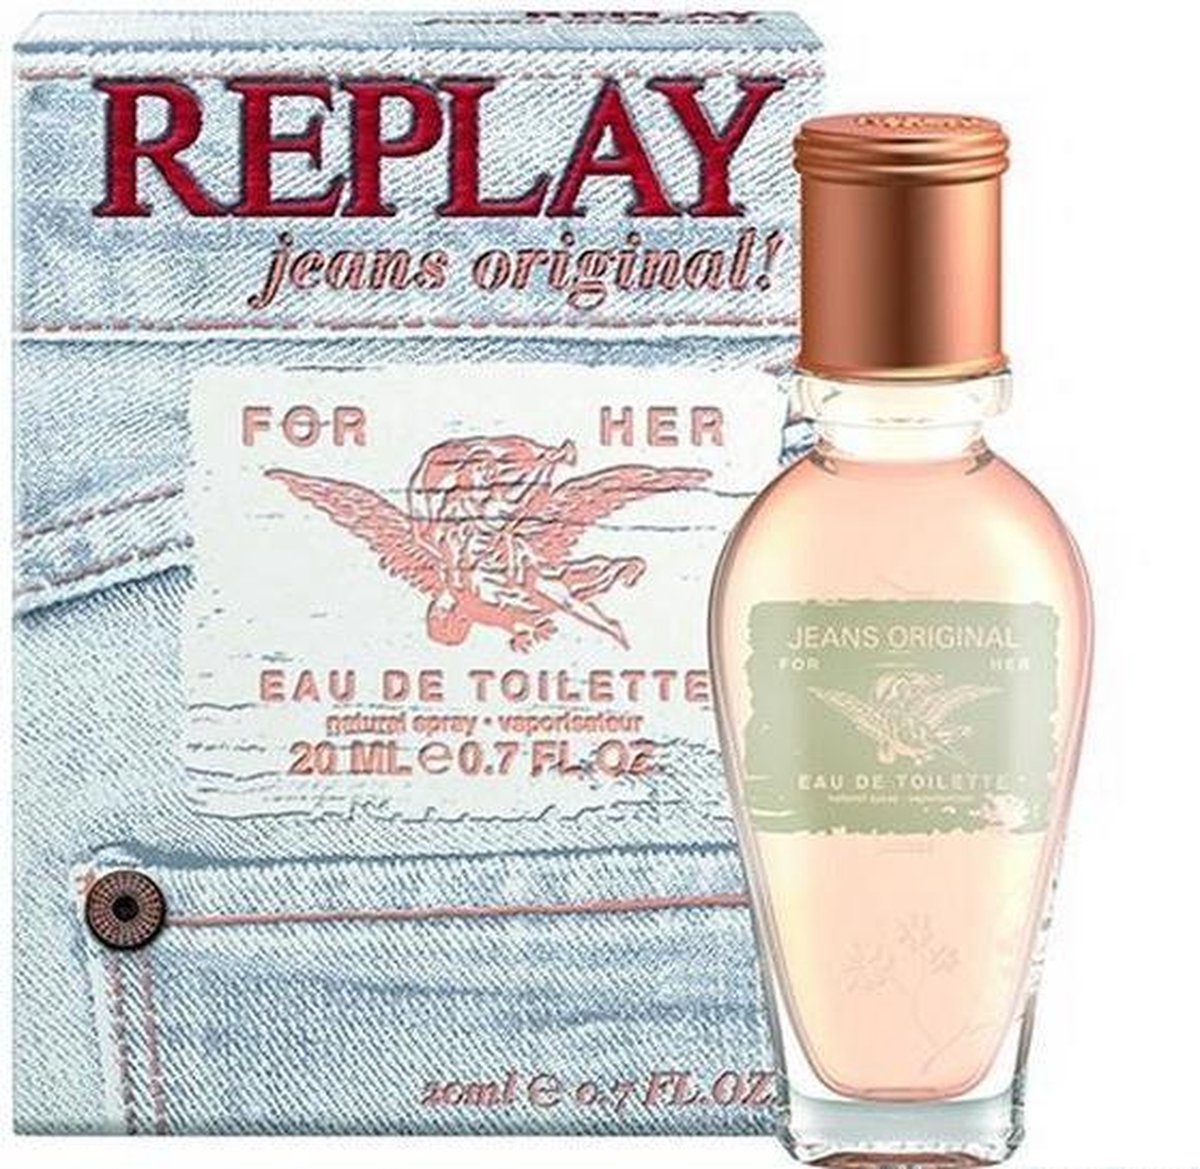 Replay Jeans Original For Her Eau De Toilette | bol.com